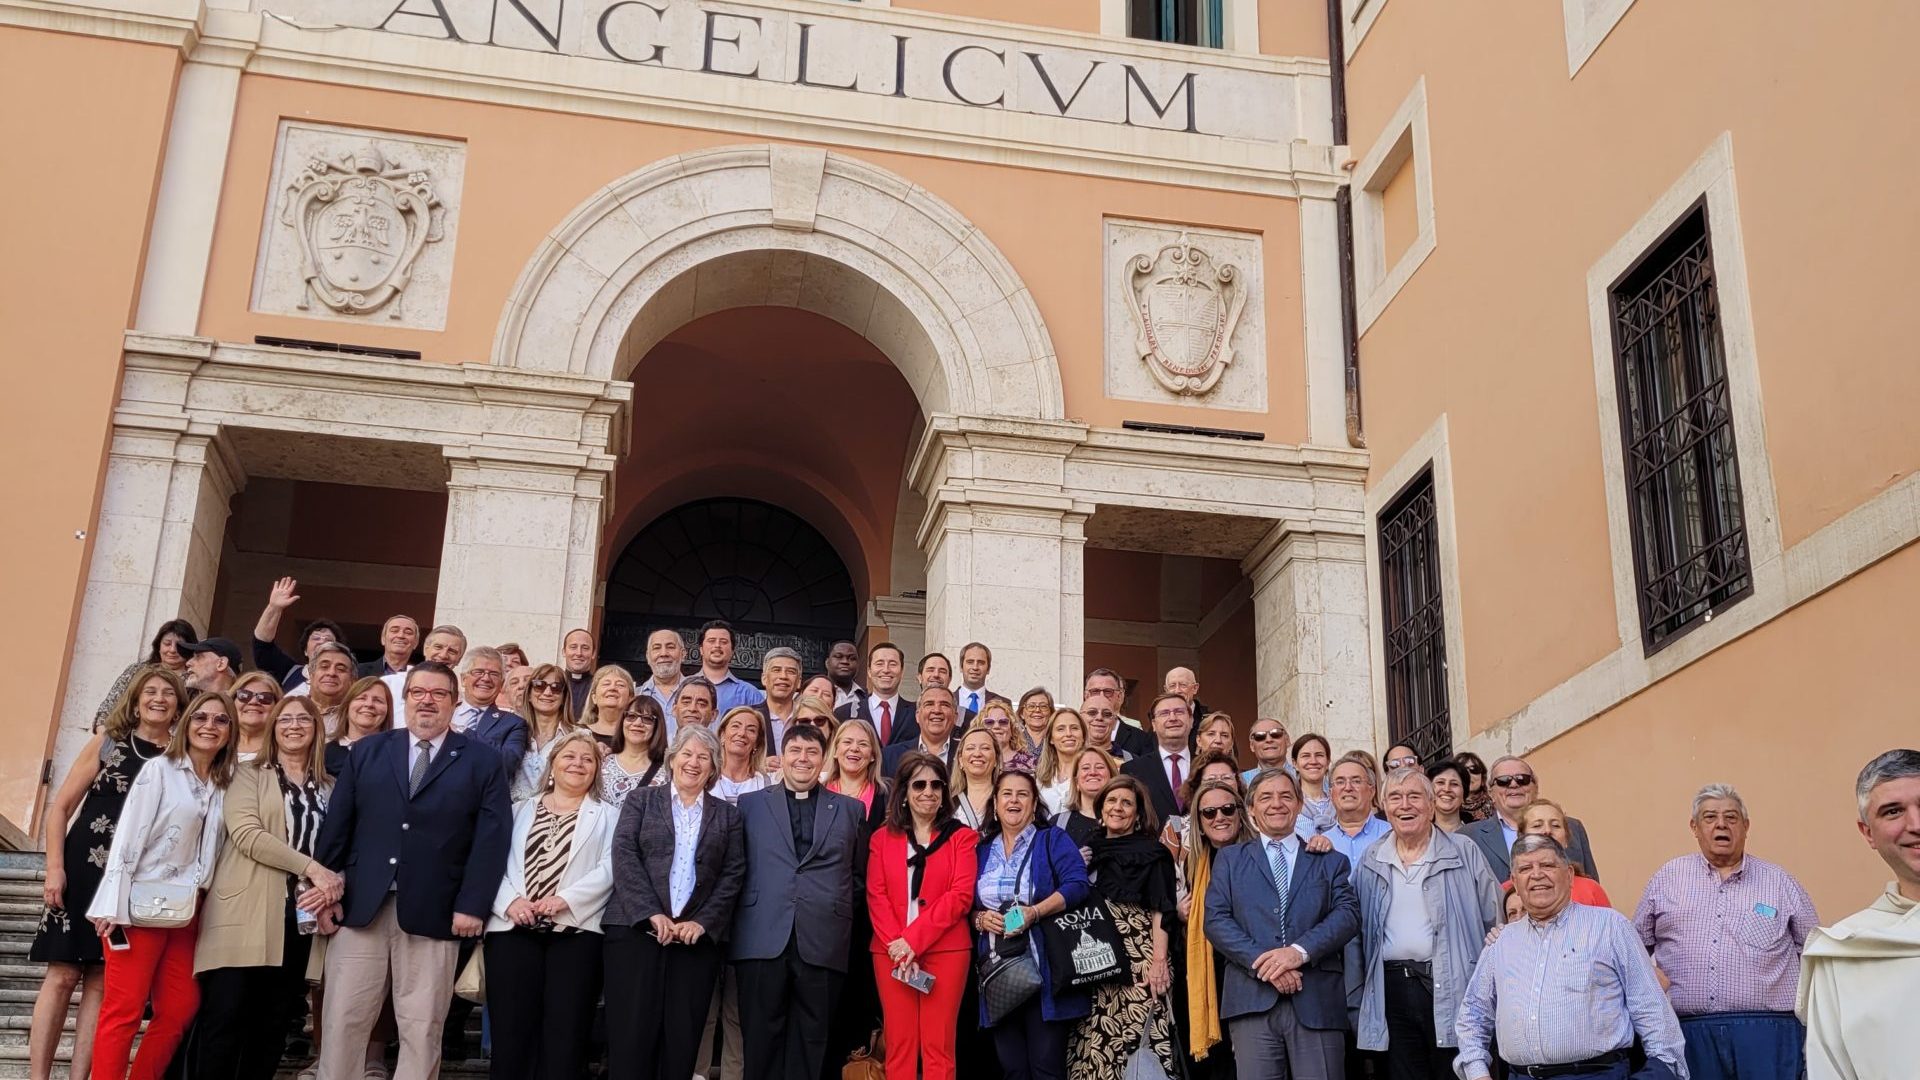 Visita y recorrido del Angelicum